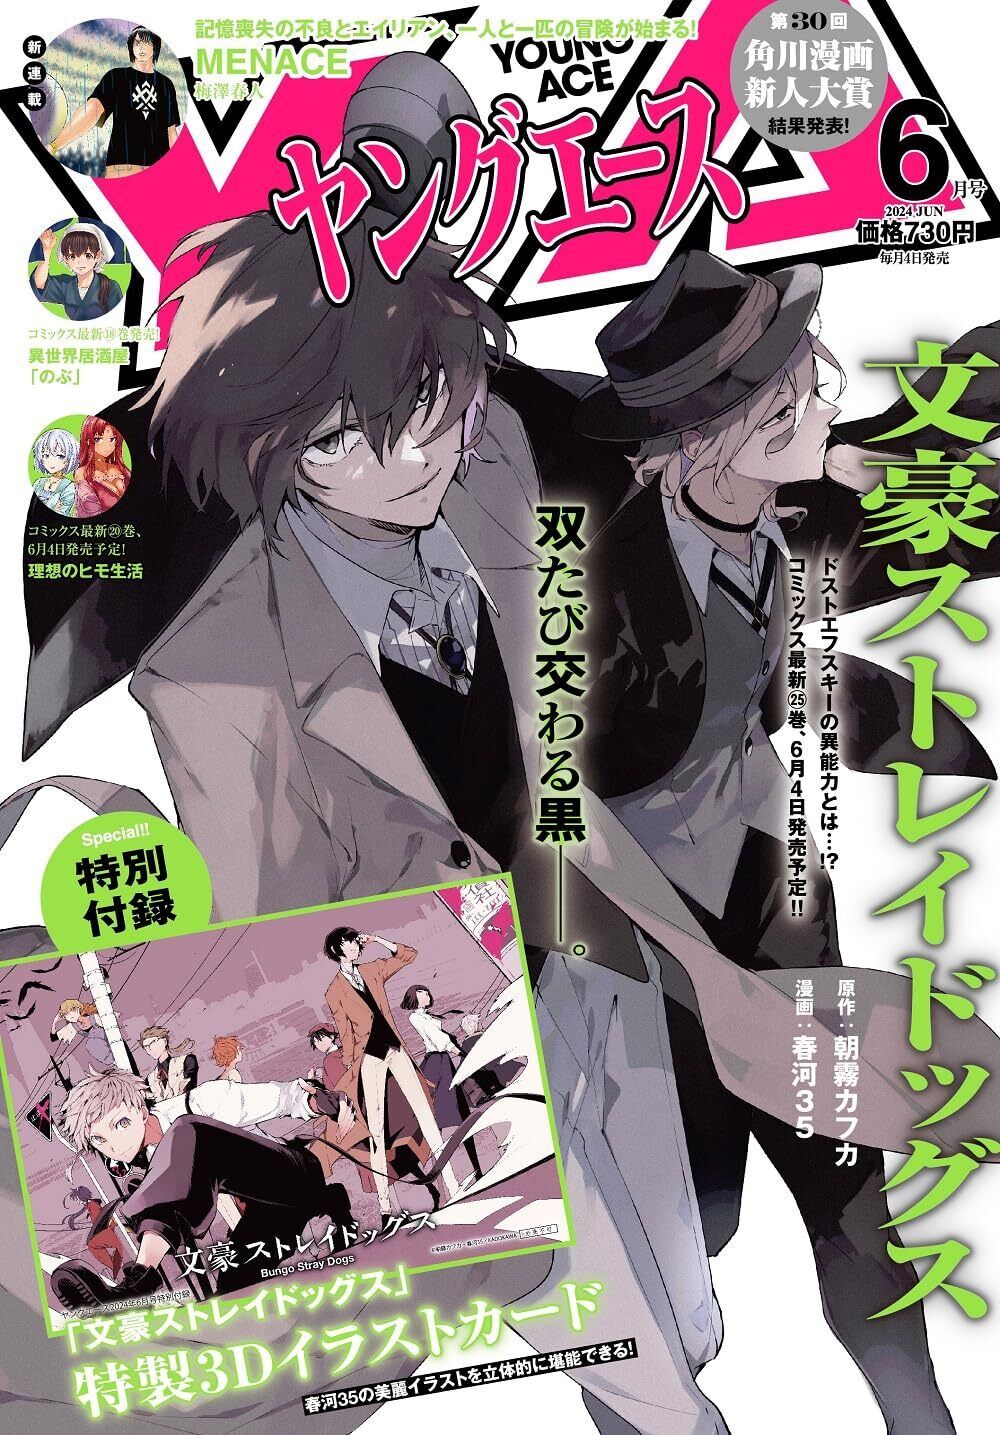 Young Ace June 2024 Magazine manga Bungo Stray Dogs Nobu Japanese Book New